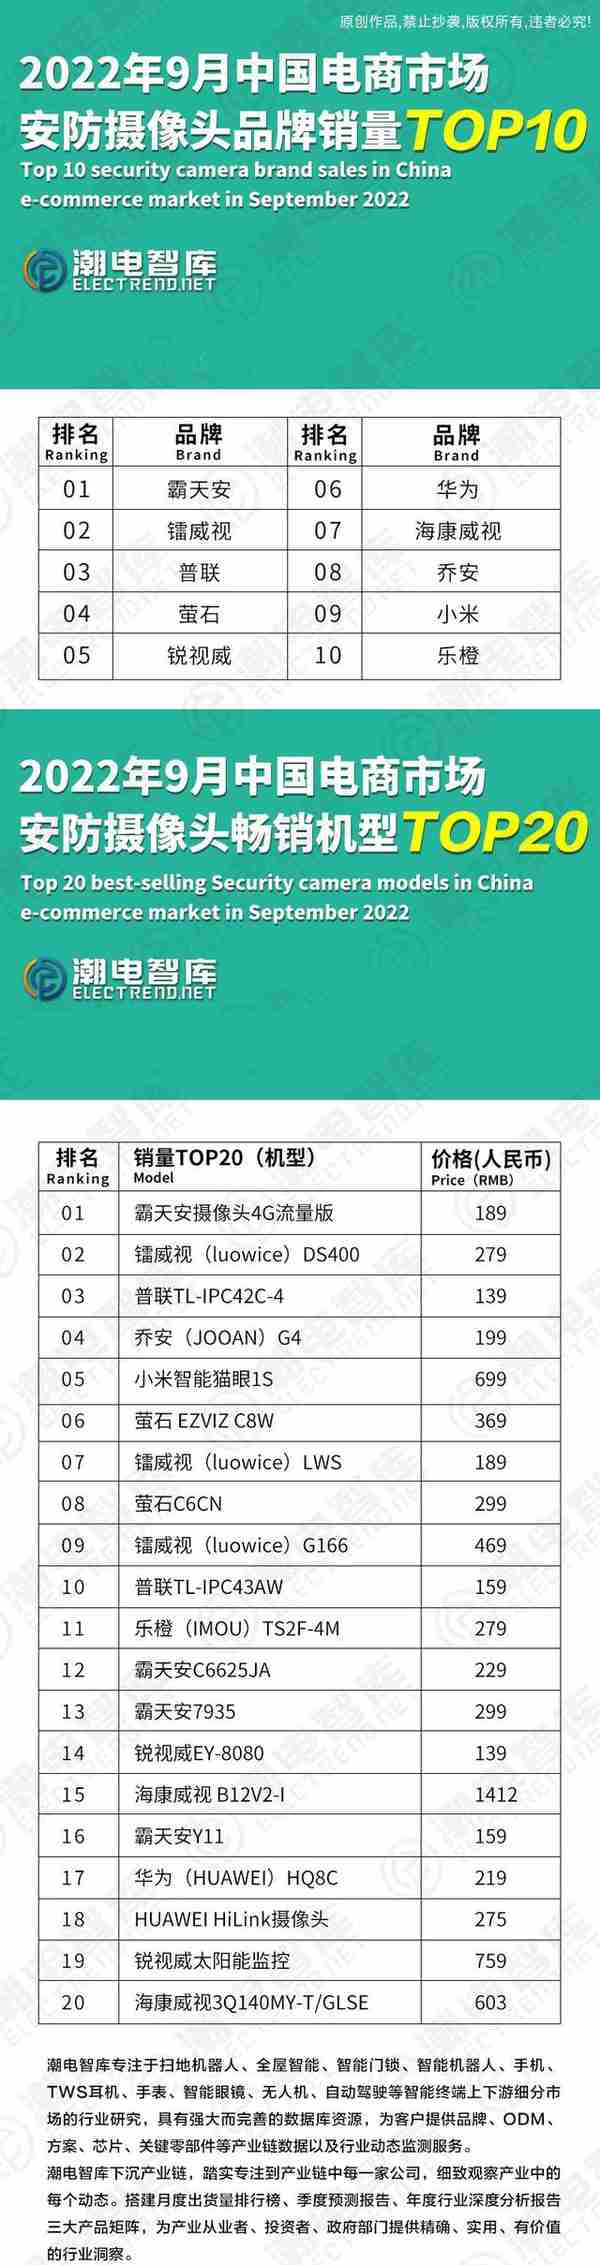 2022年9月中国电商市场安防摄像头品牌销量TOP10